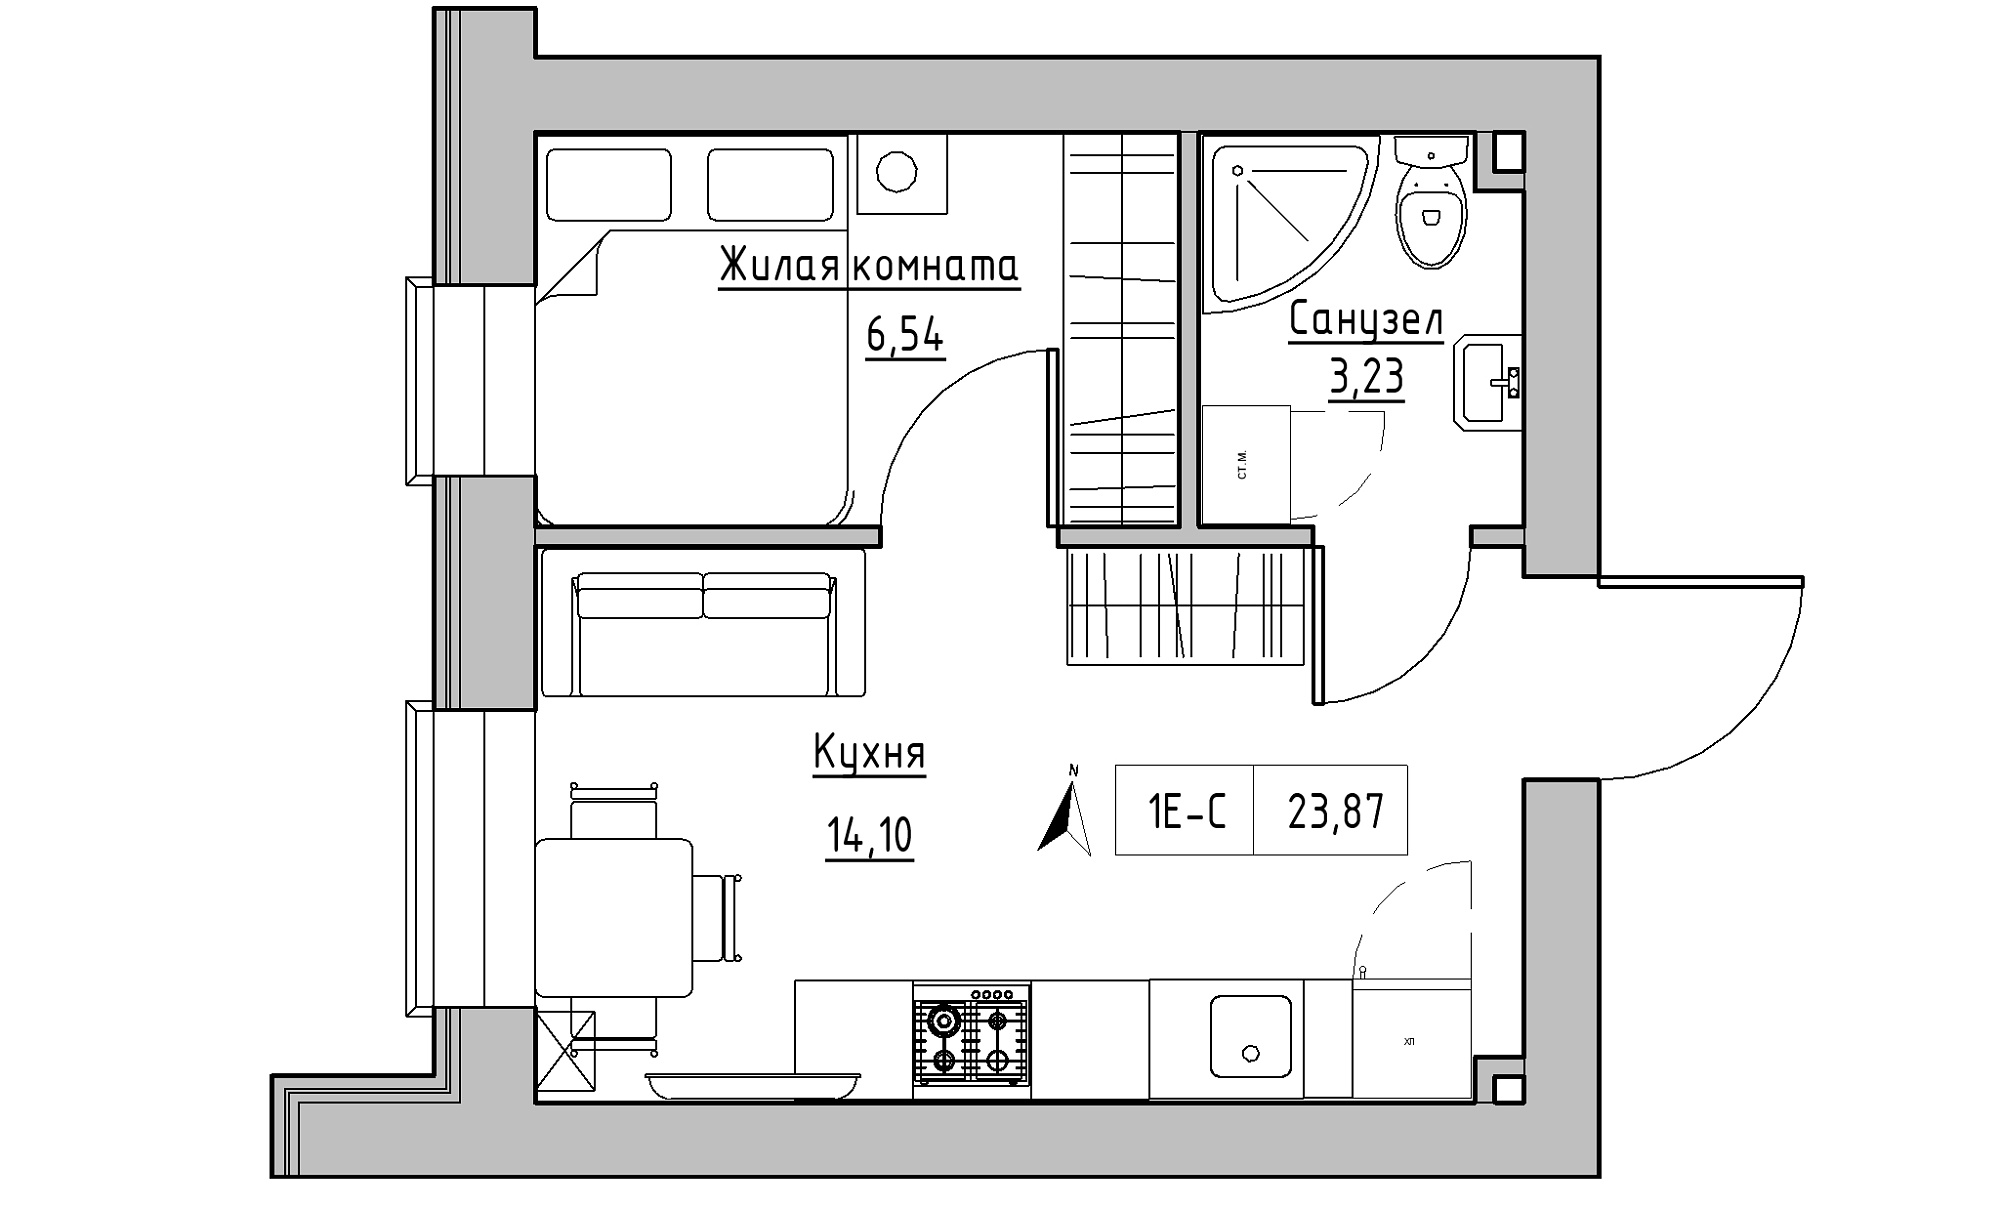 Планировка 1-к квартира площей 23.87м2, KS-016-02/0012.